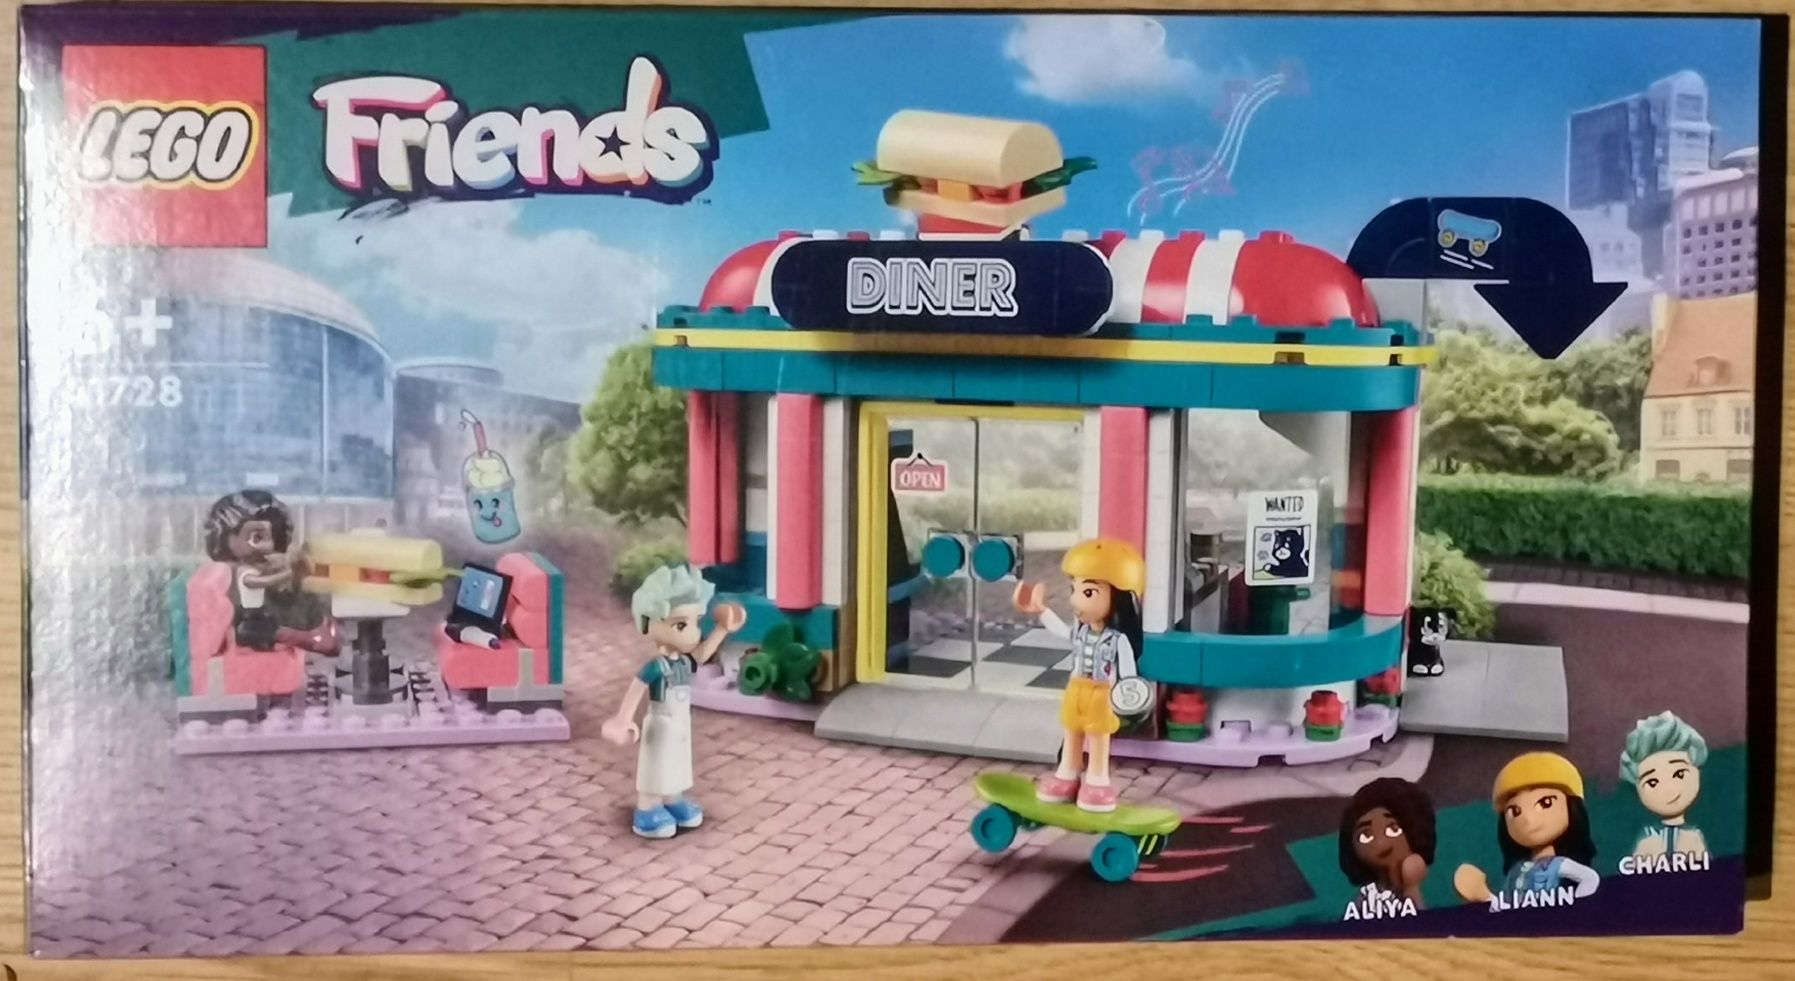 LEGO Friends 41728 - Bar w śródmieściu Heartlake